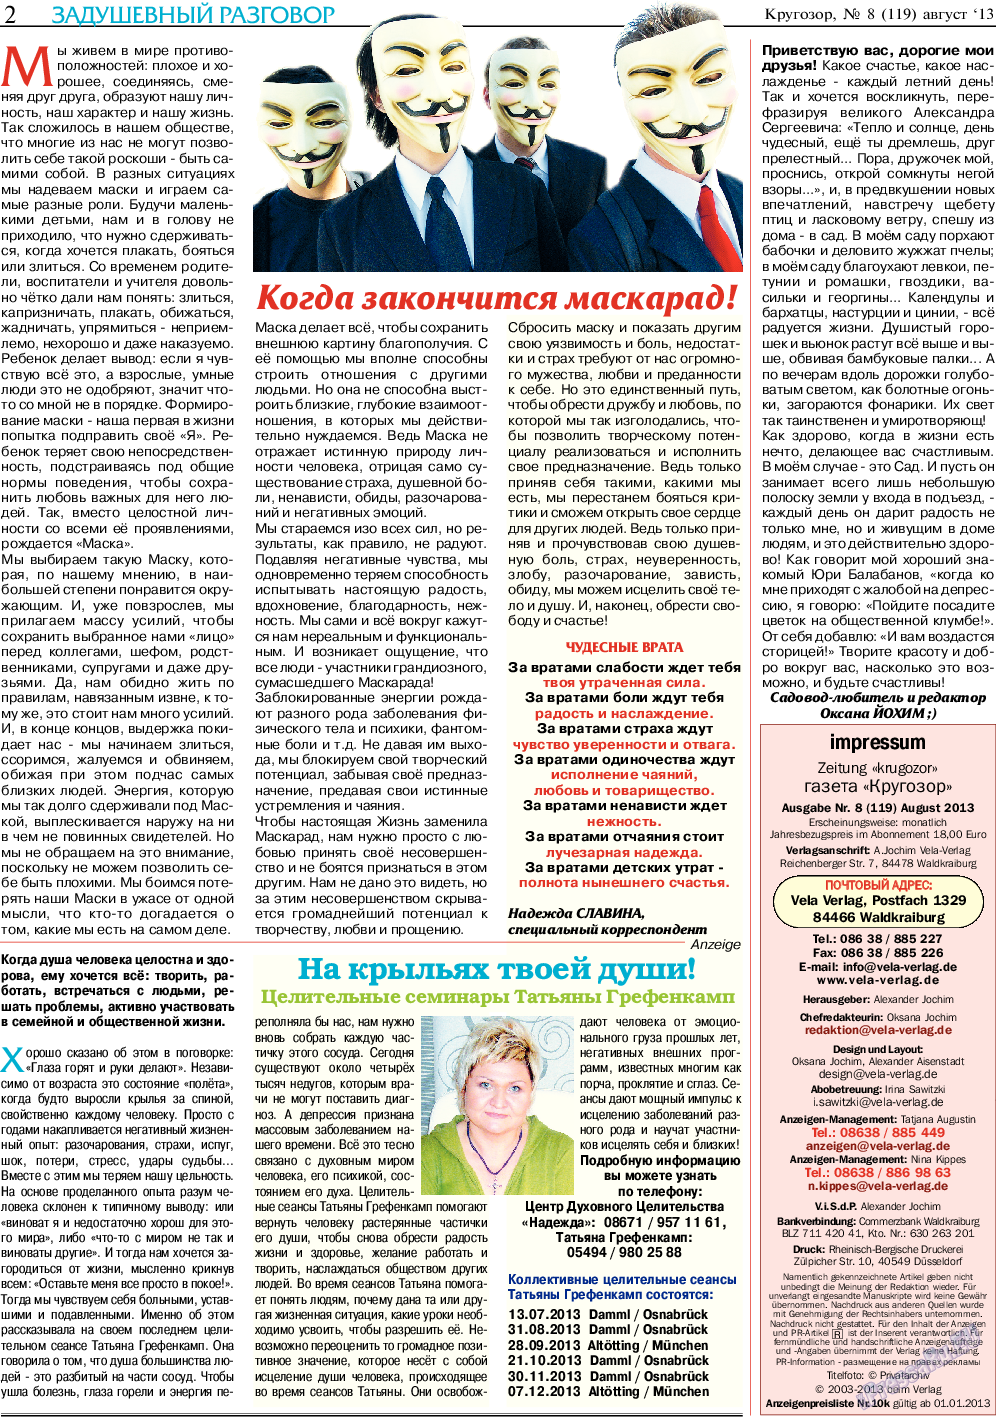 Кругозор, газета. 2013 №8 стр.2